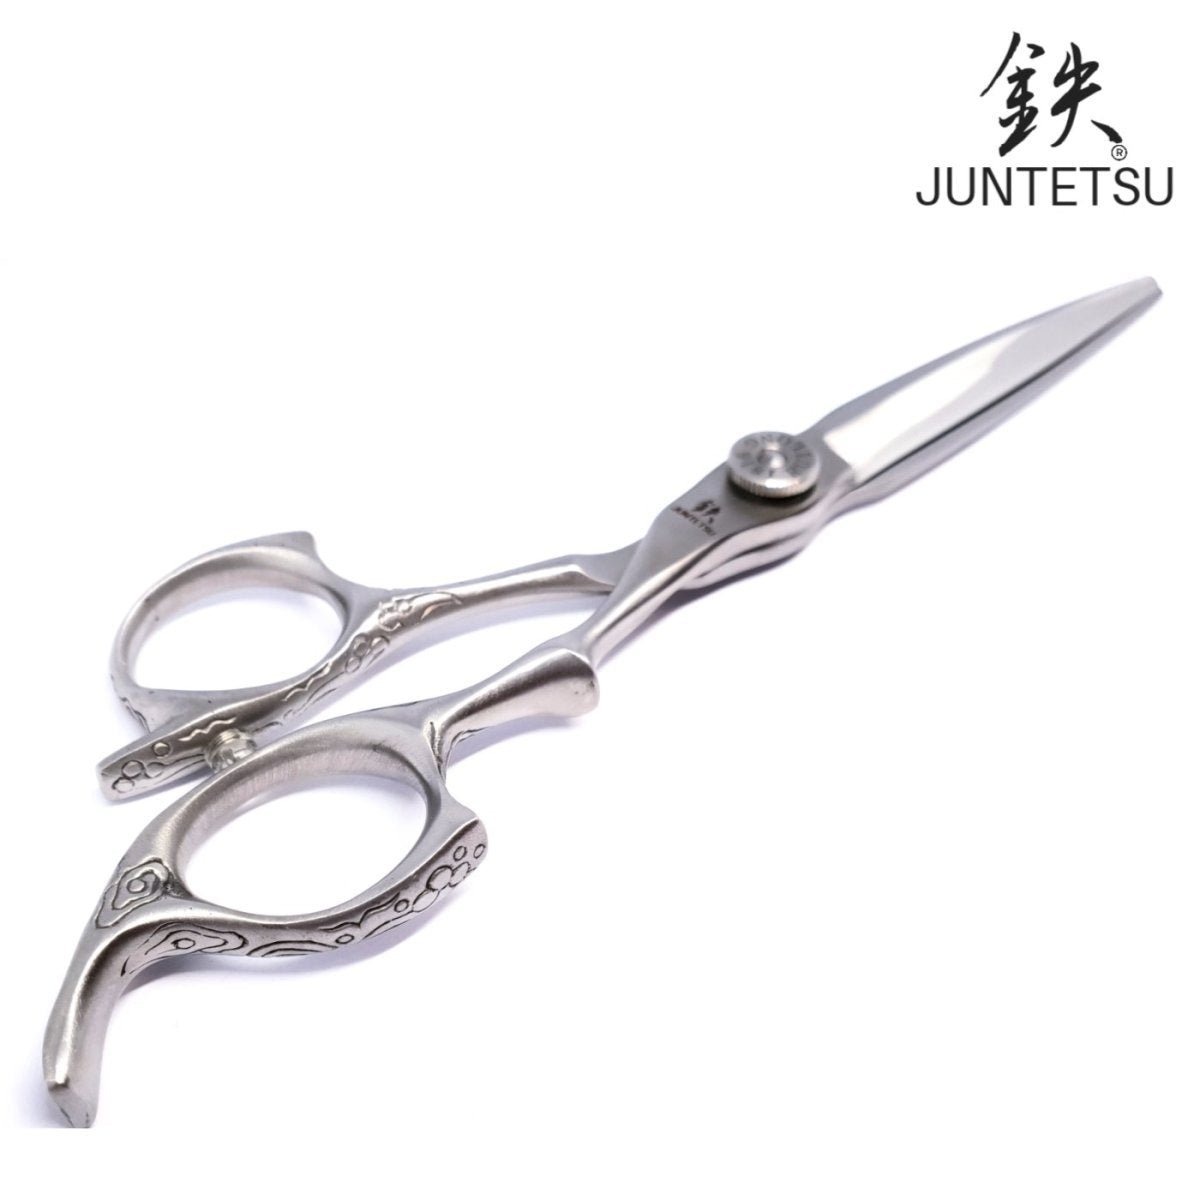 Juntetsu KS Cutting Scissors - Japan Scissors USA